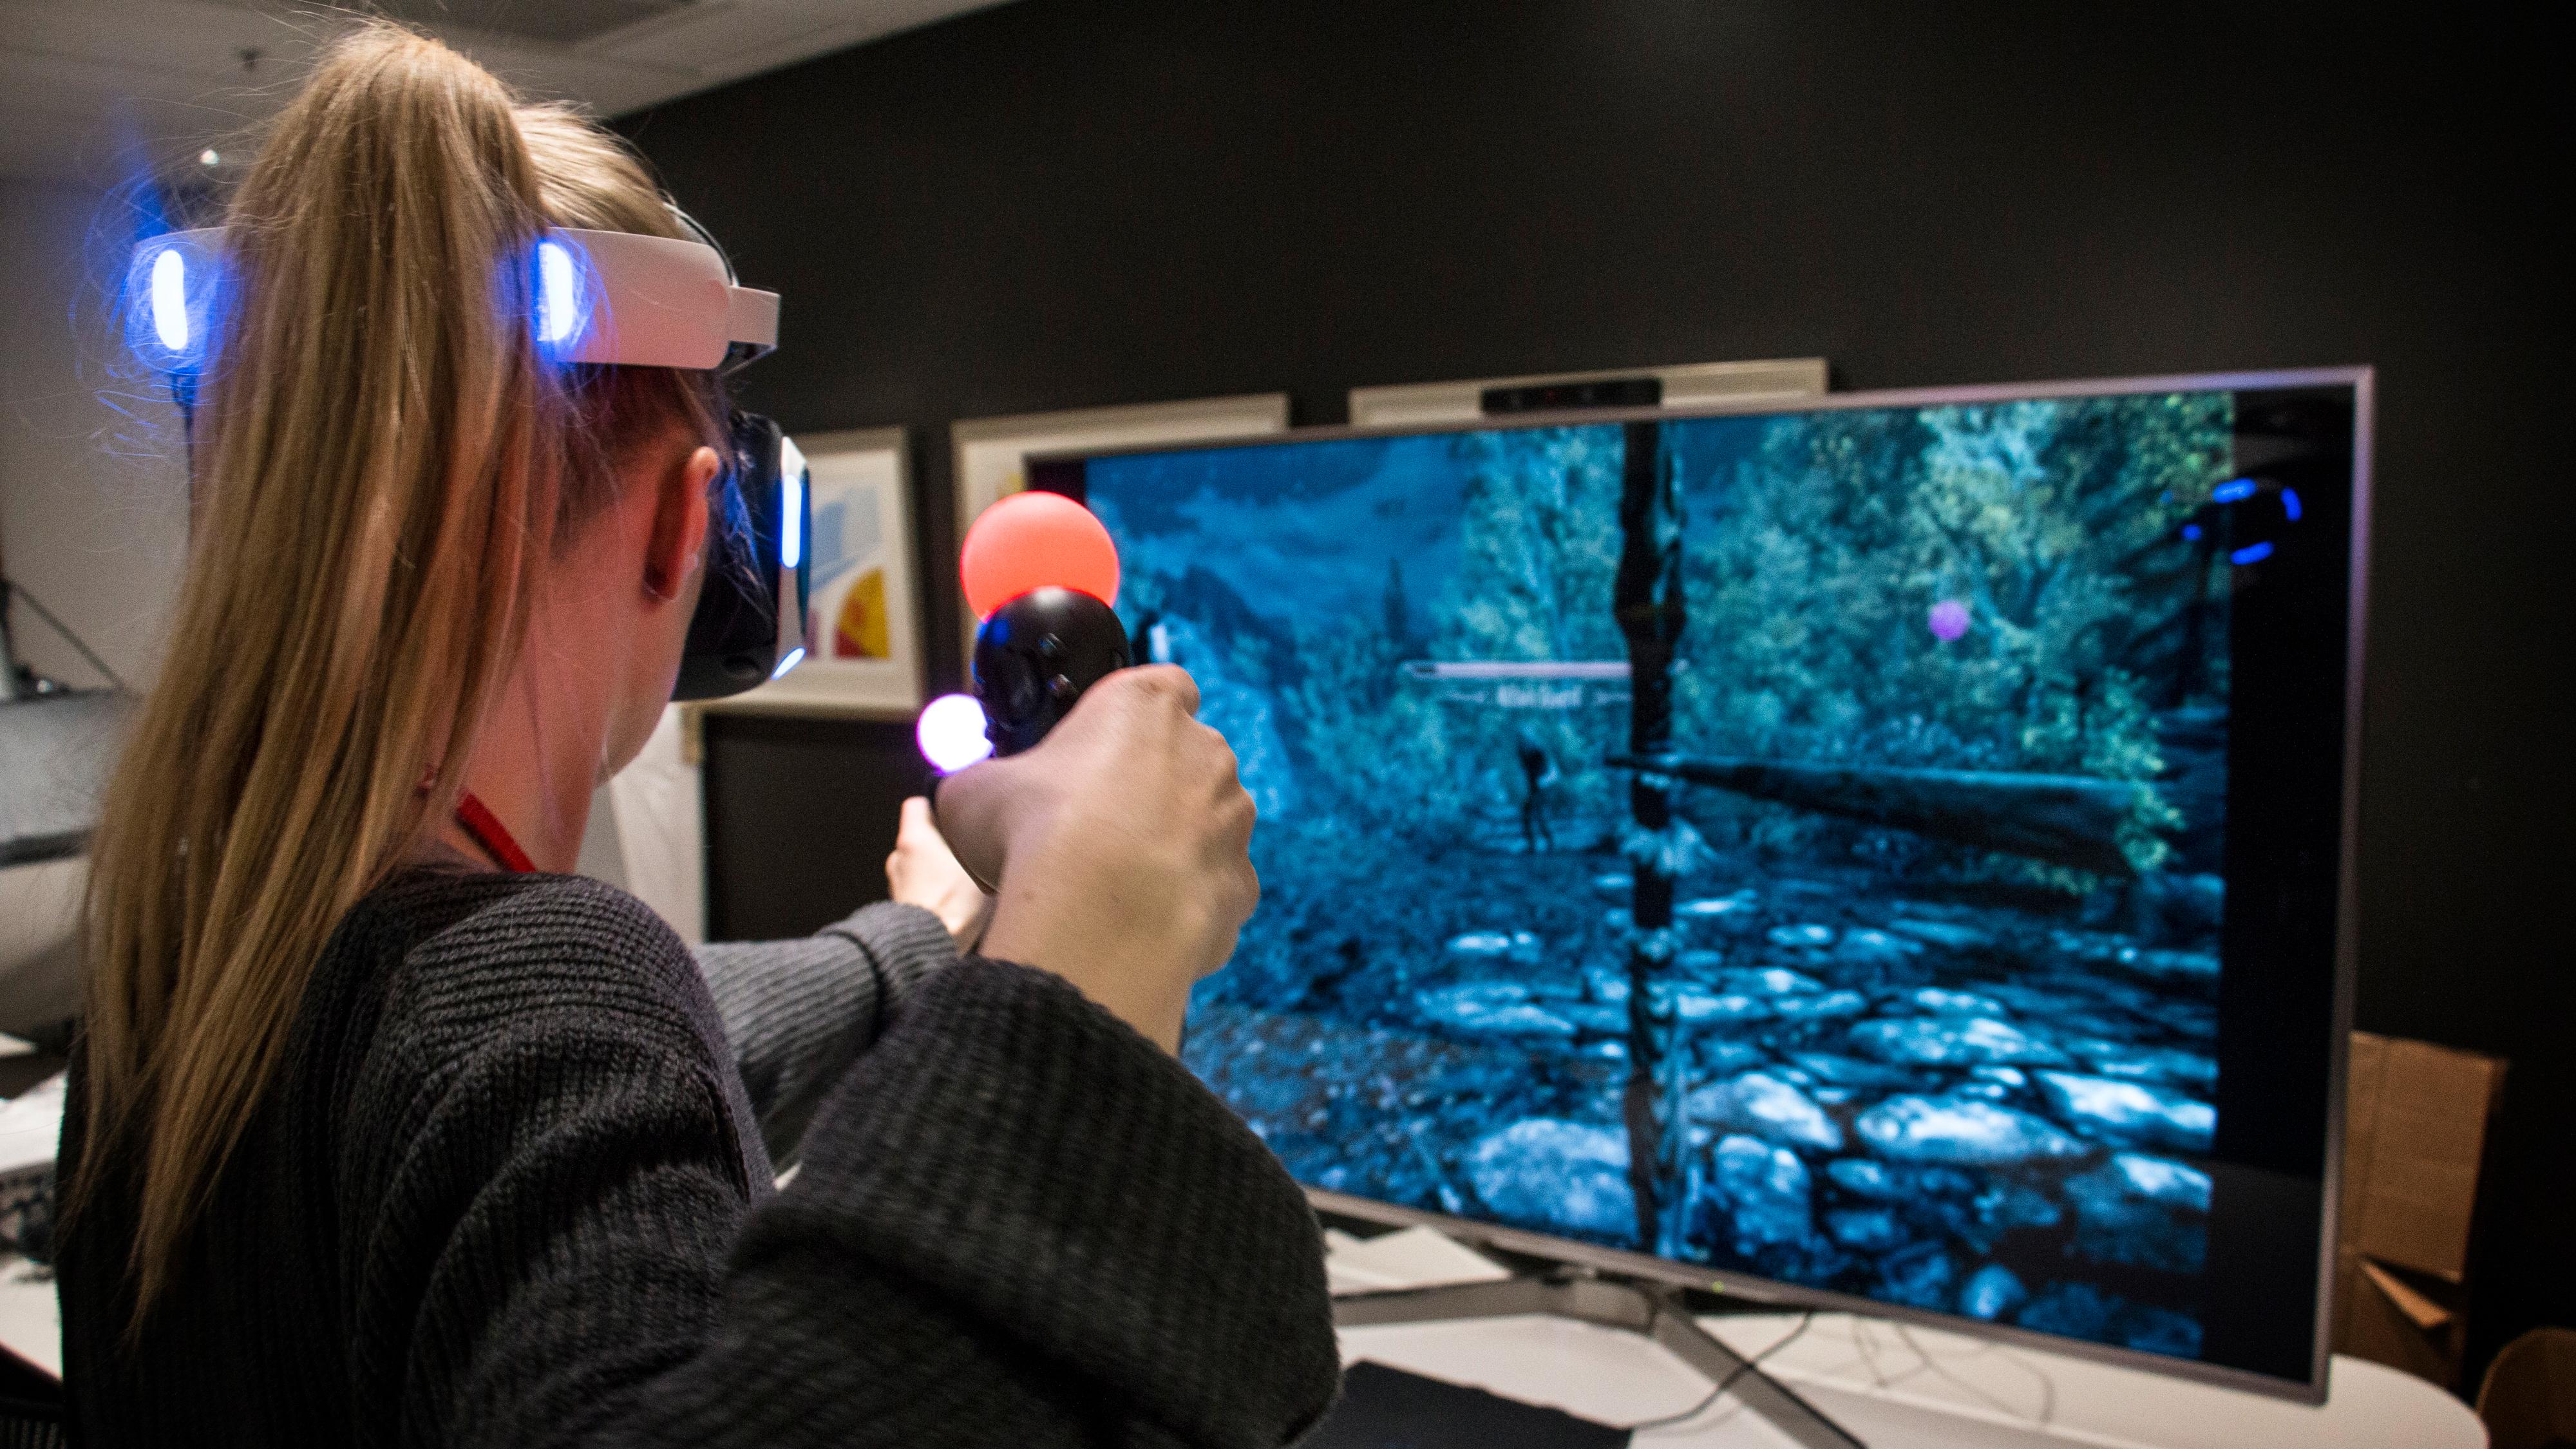 Endelig en fullblods VR-opplevelse: Slik var det å spille Skyrim i VR